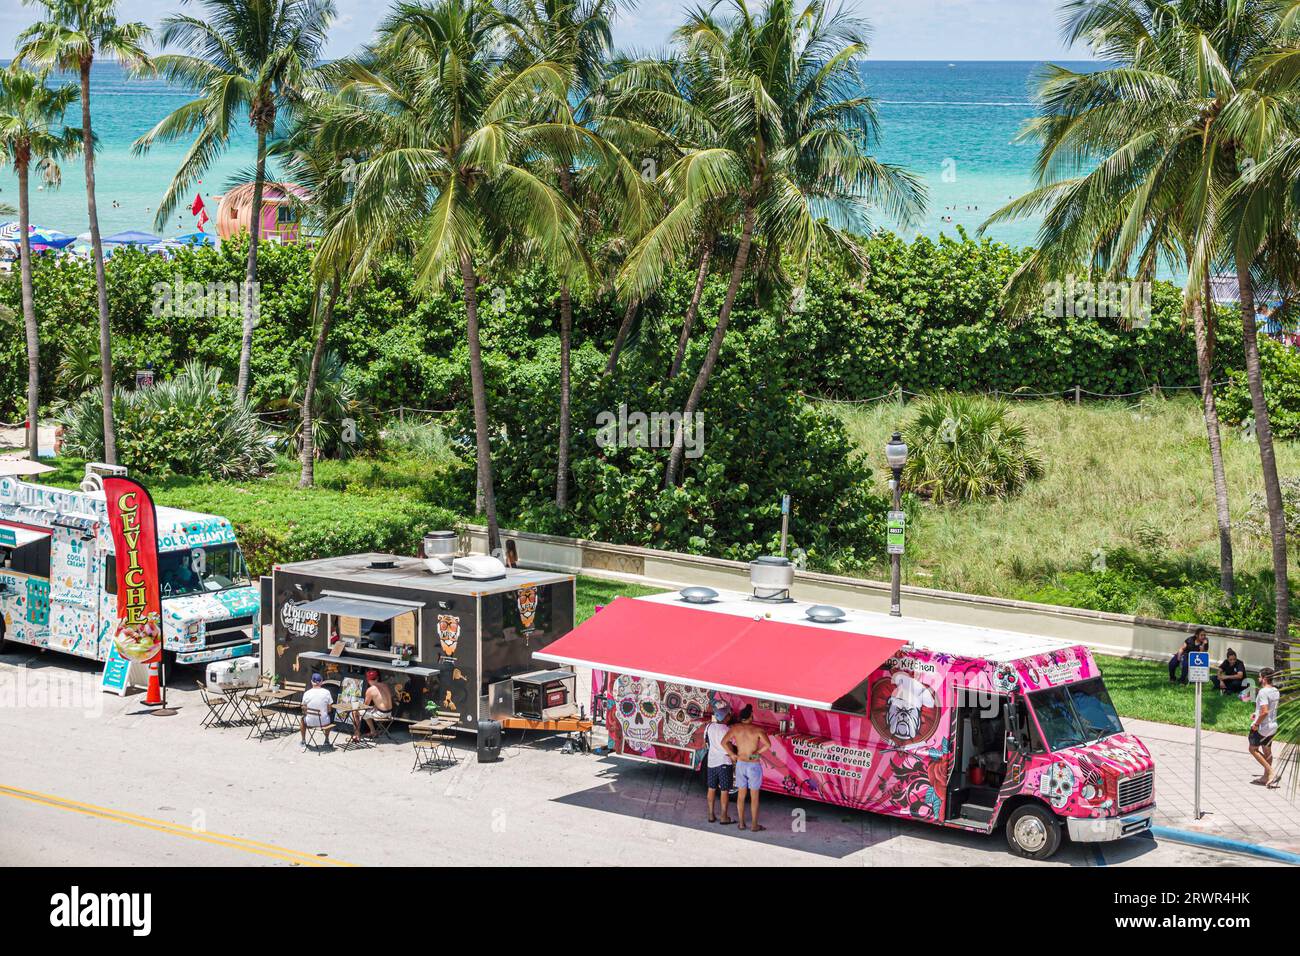 Miami Beach Florida, Ocean Terrace, actividad de celebración del evento del Día de la Independencia del 4 de julio, camiones de comida, palmeras de agua del Océano Atlántico Foto de stock